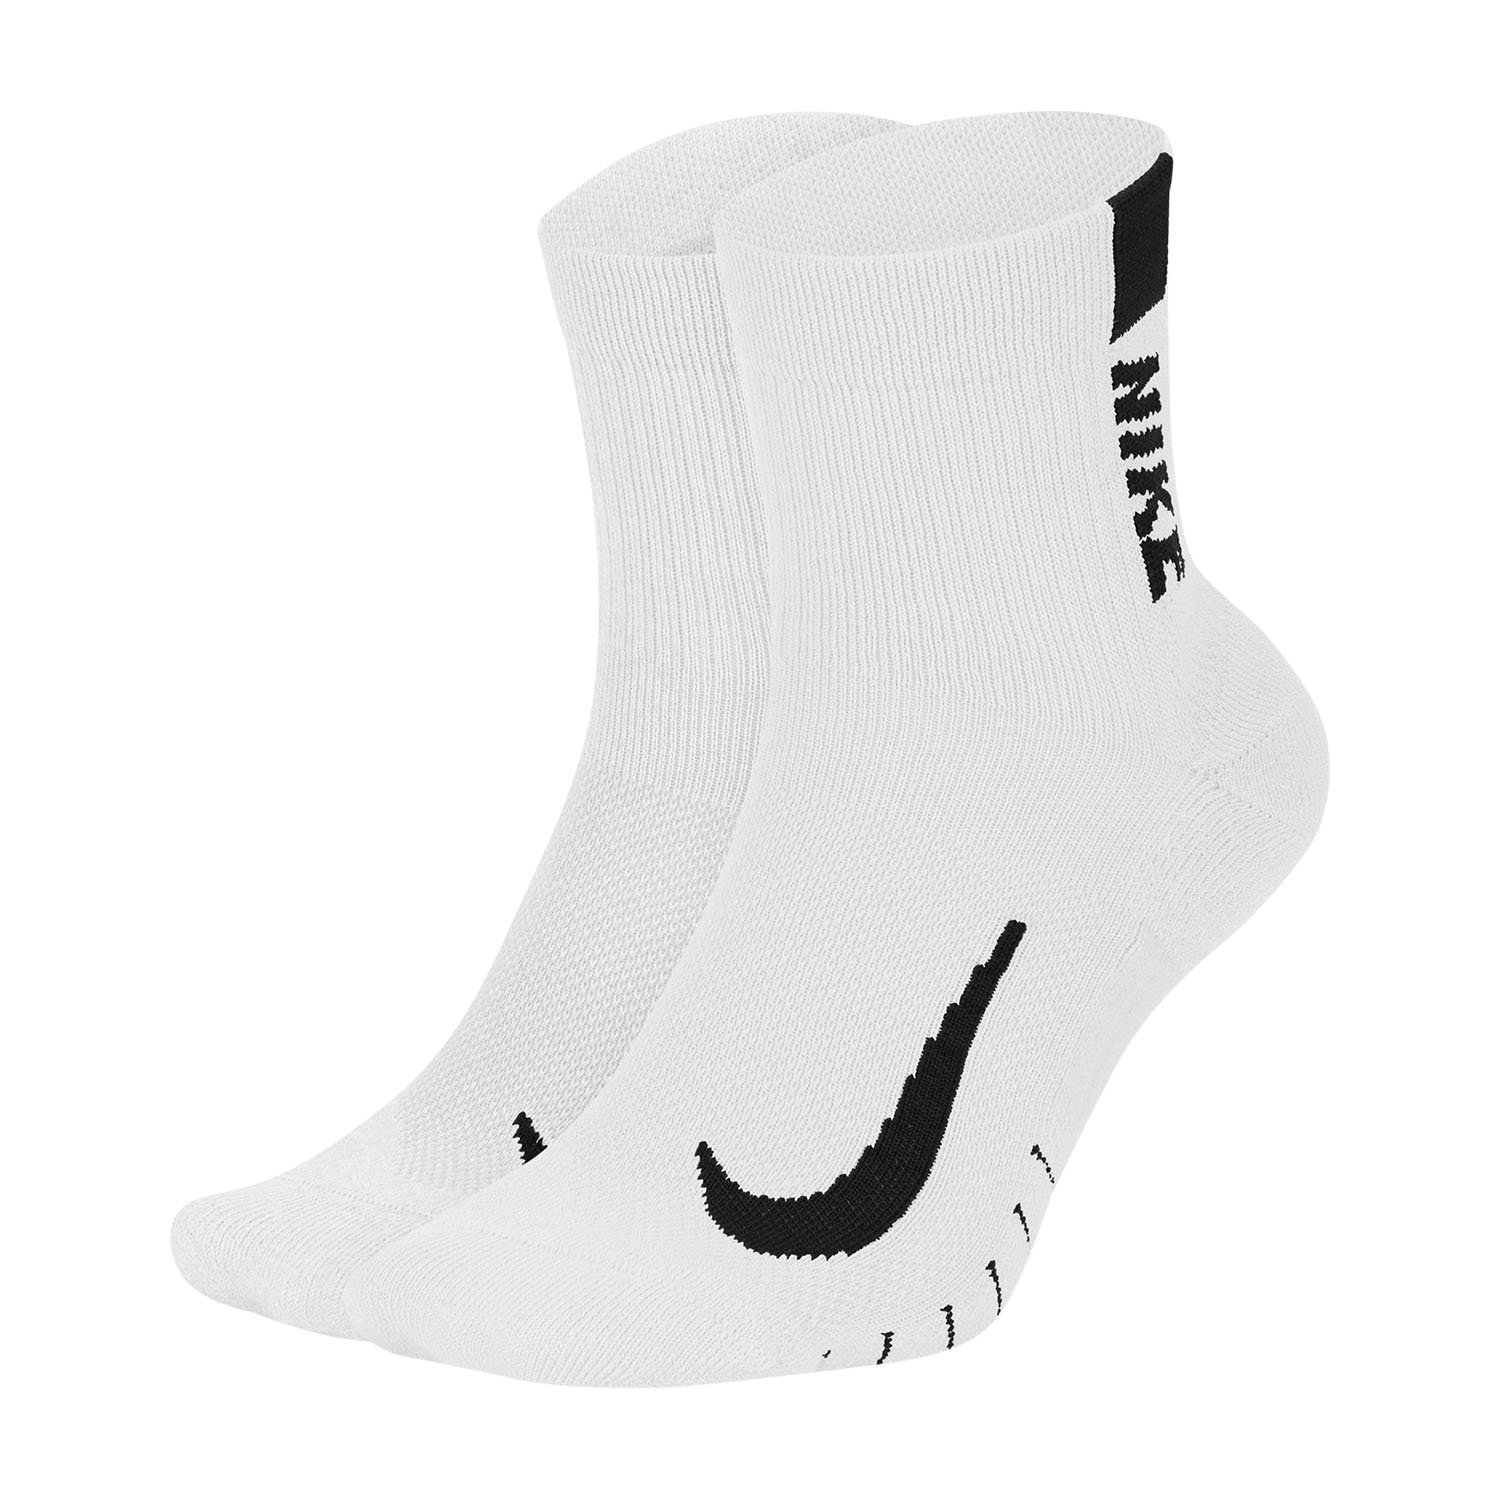 Nike Multiplier x 2 Running Socks - White/Black